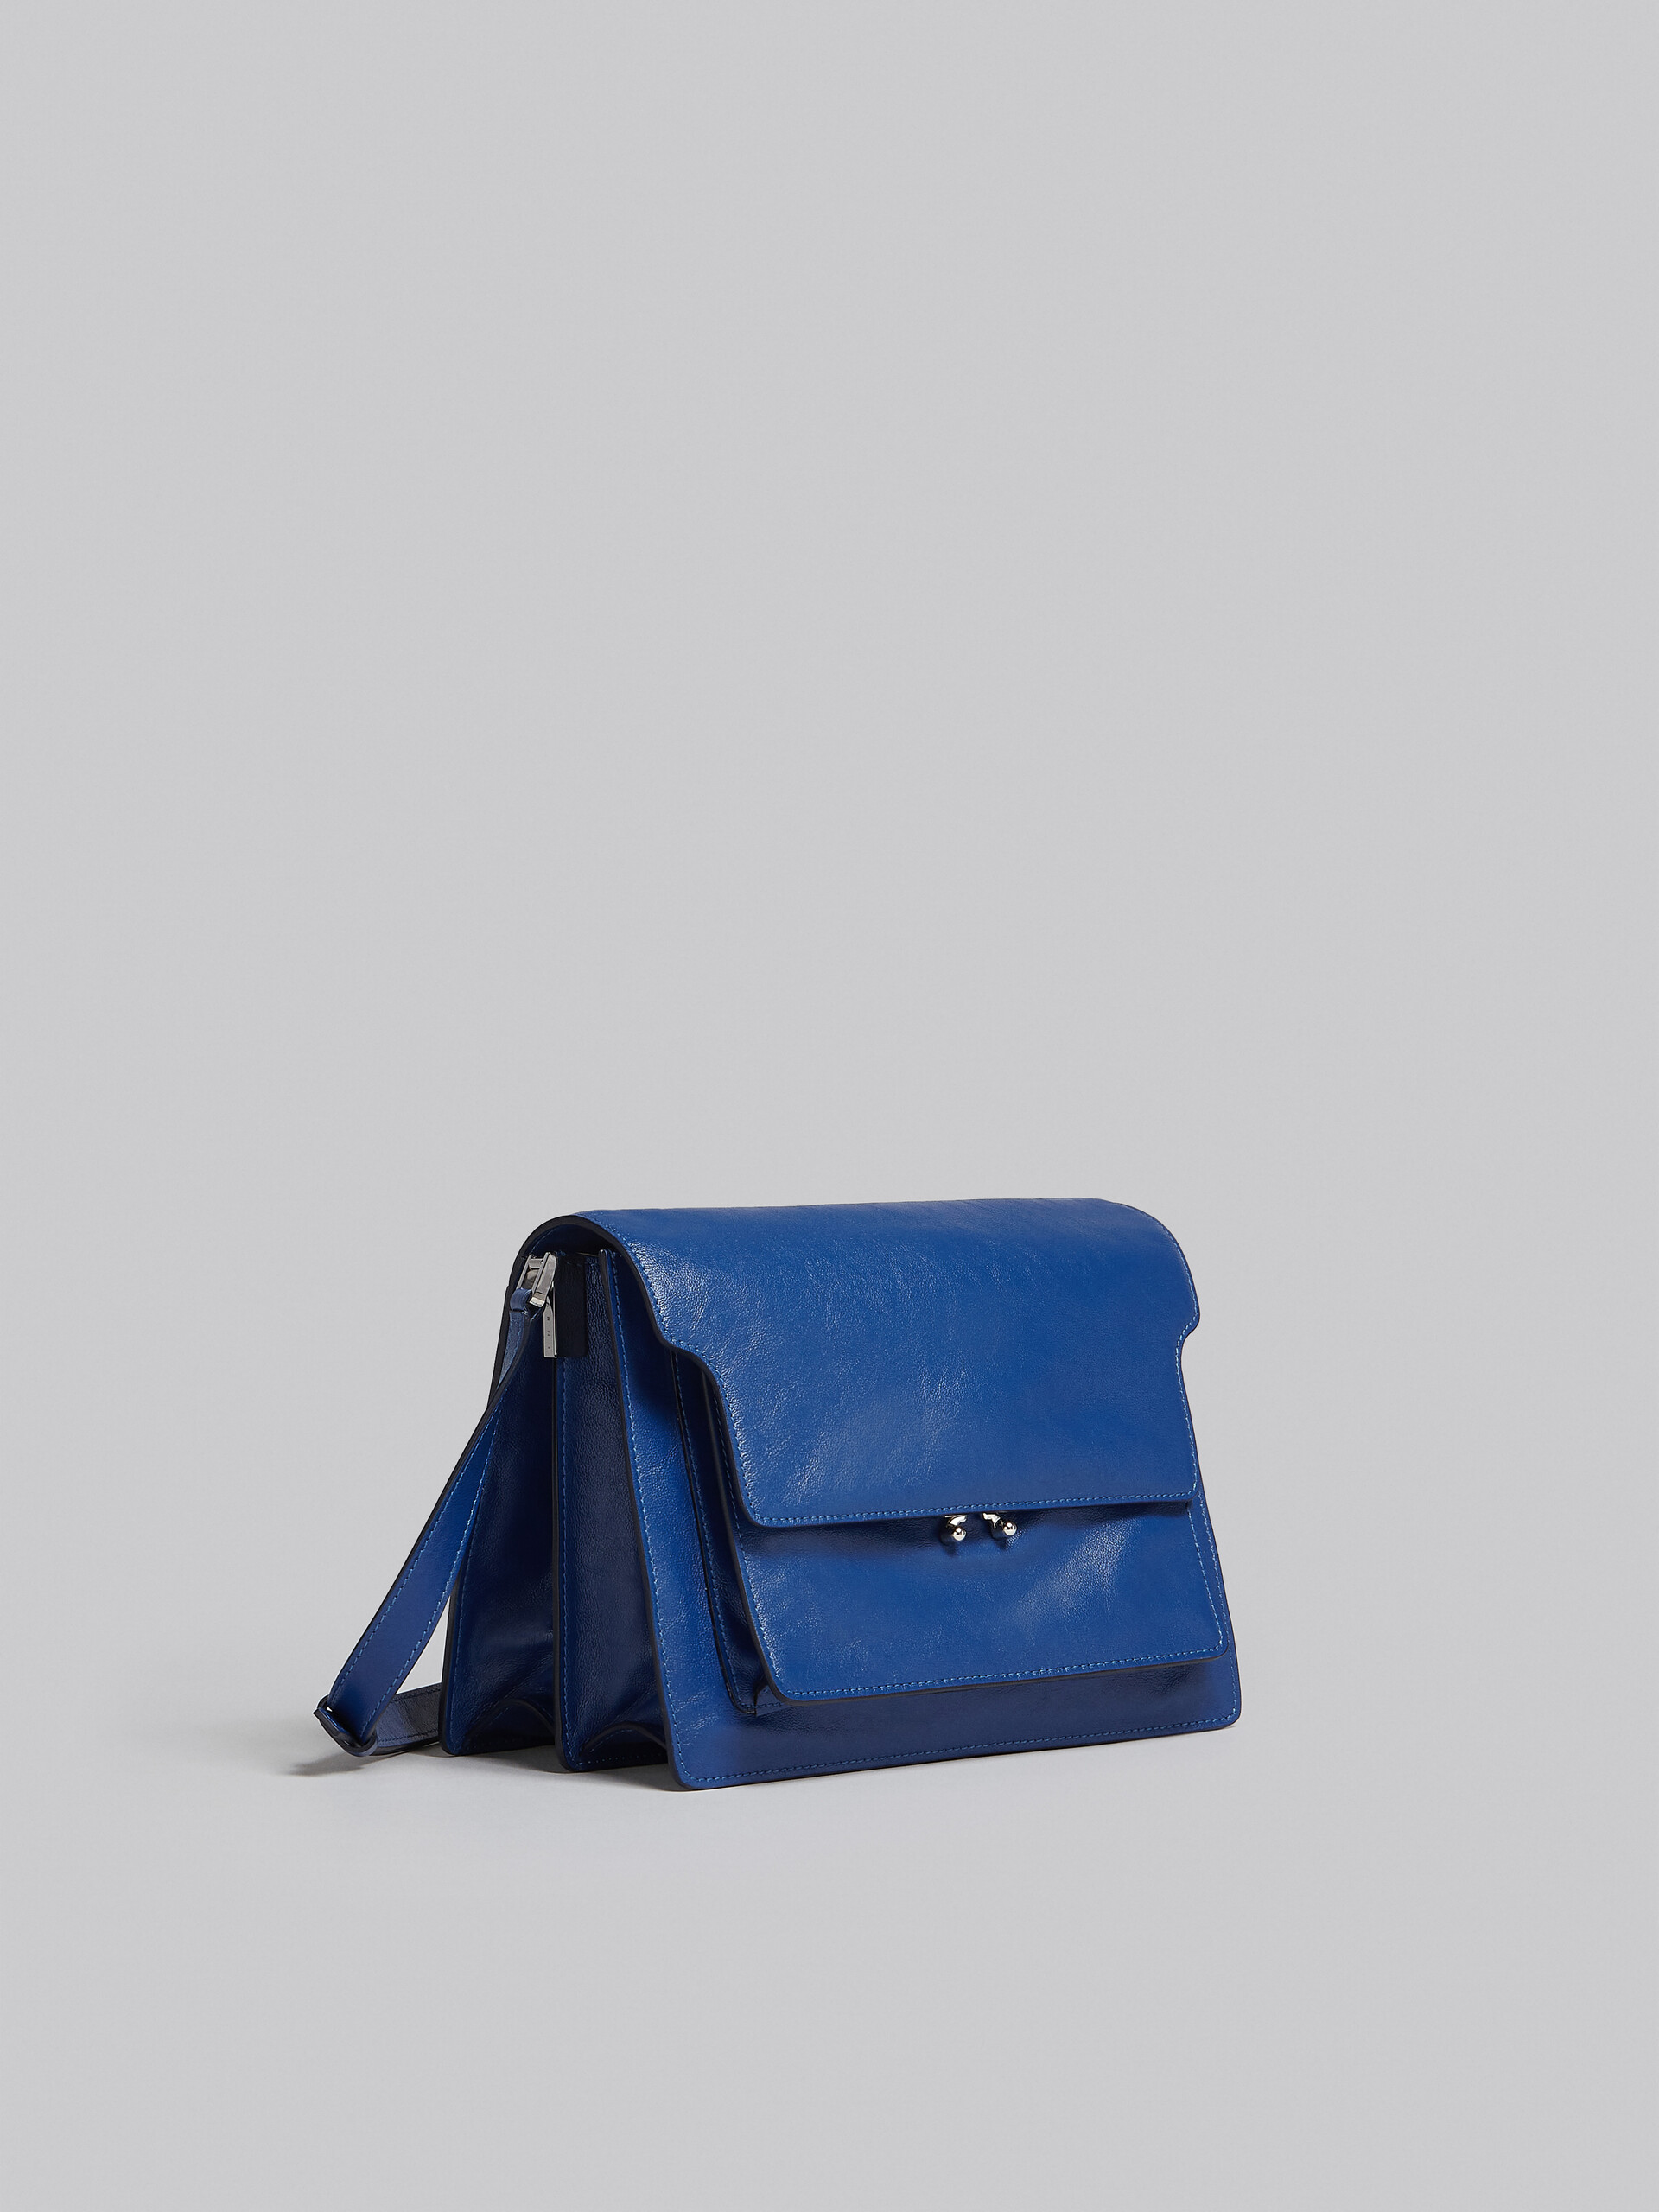 Trunk Soft Large Bag in blue leather - Shoulder Bags - Image 6